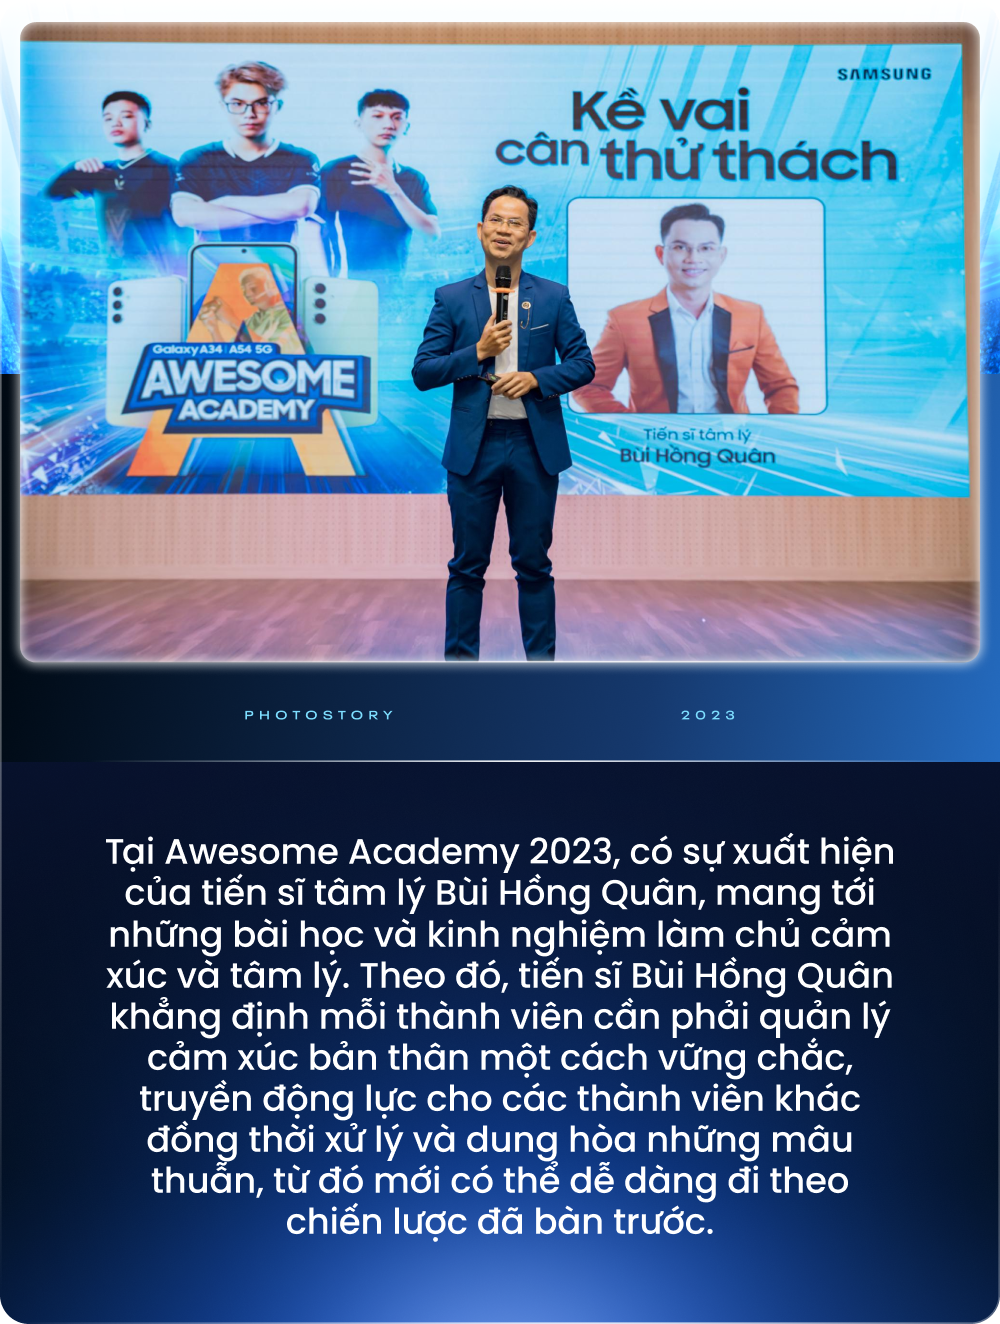 Mùa 2 của Awesome Academy đã đem đến giá trị gì cho sinh viên Việt Nam - Ảnh 3.